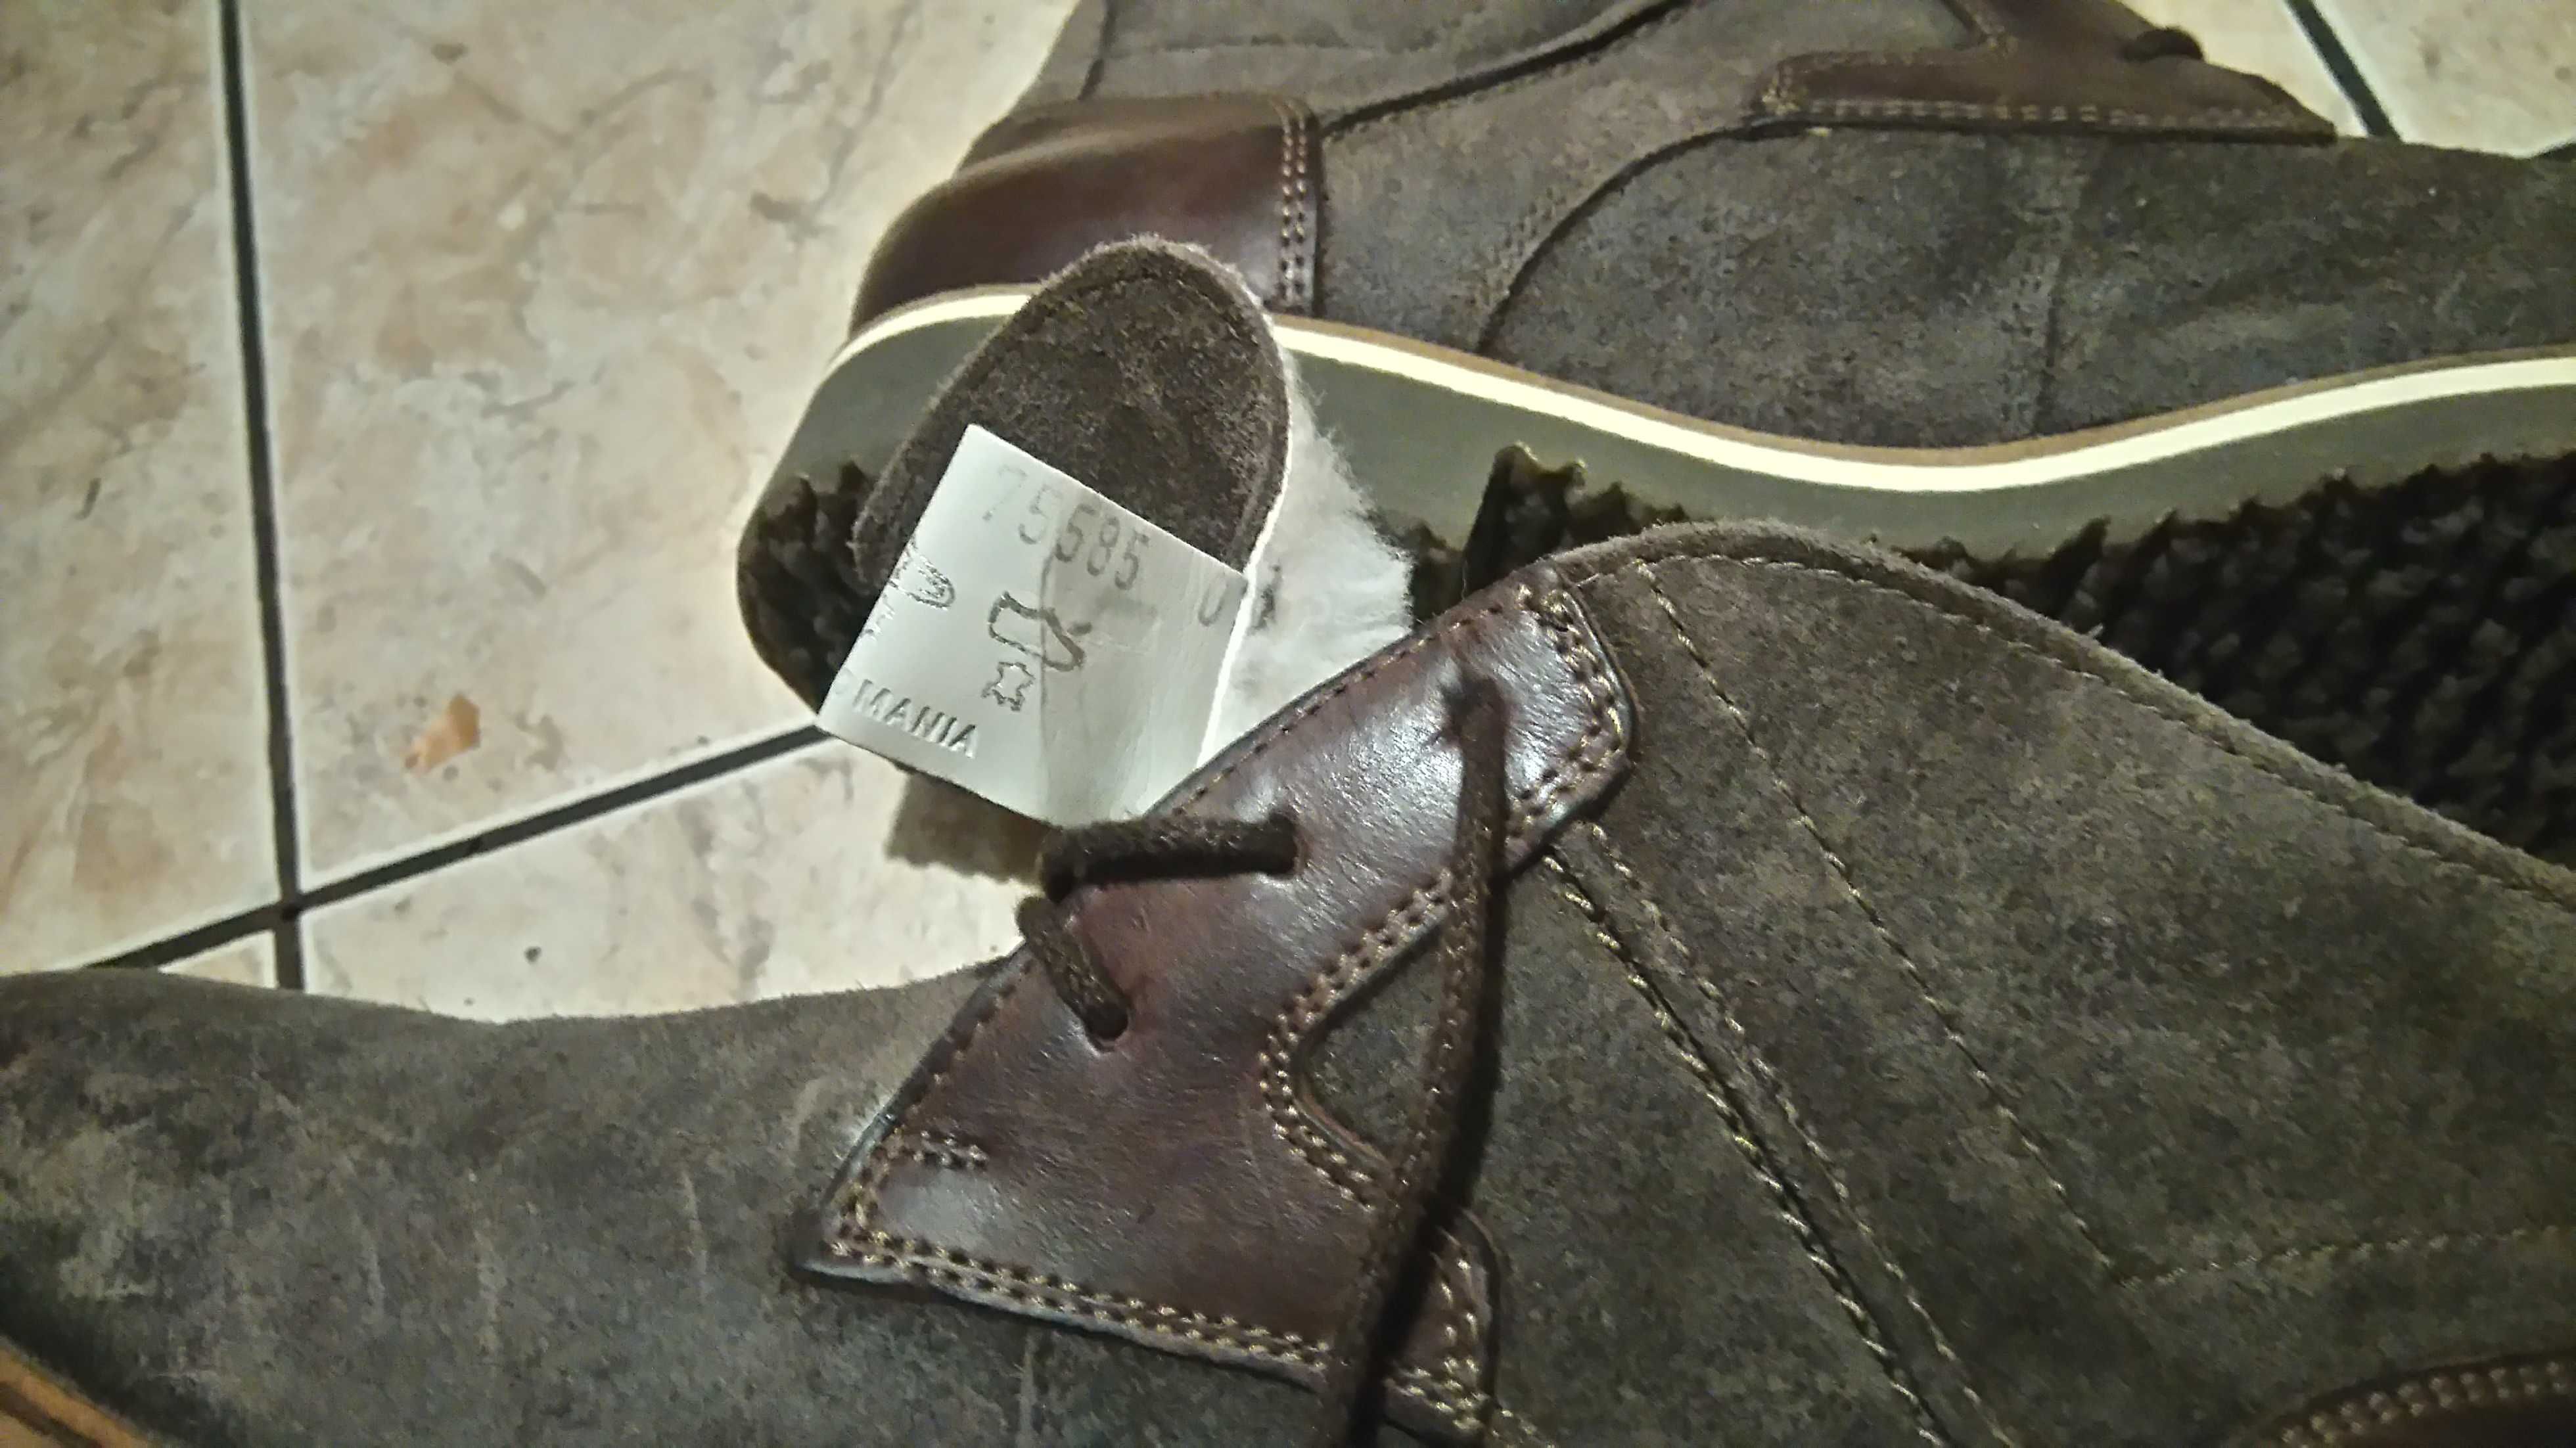 nowe buty zimowe Lloyd Veneto Gore-Tex - skóra w środku kożuch r. 40